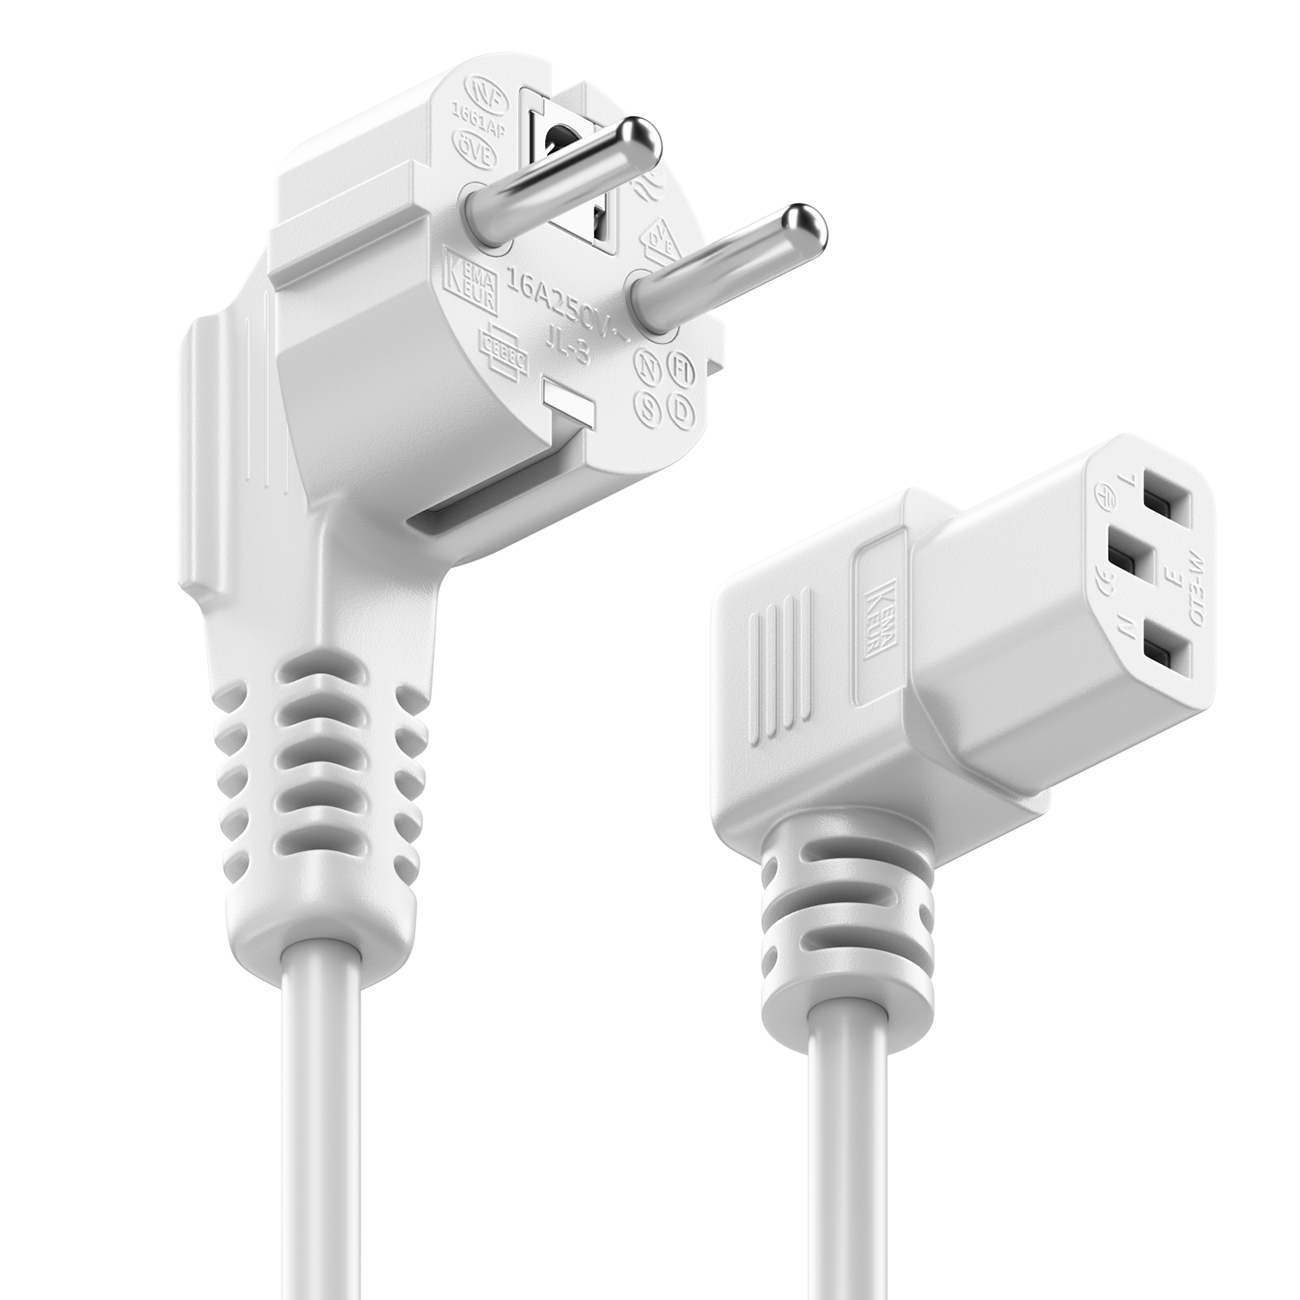 Stromkabel / Kaltgerätekabel / Power Cord - 10A, CEE 7/4 zu